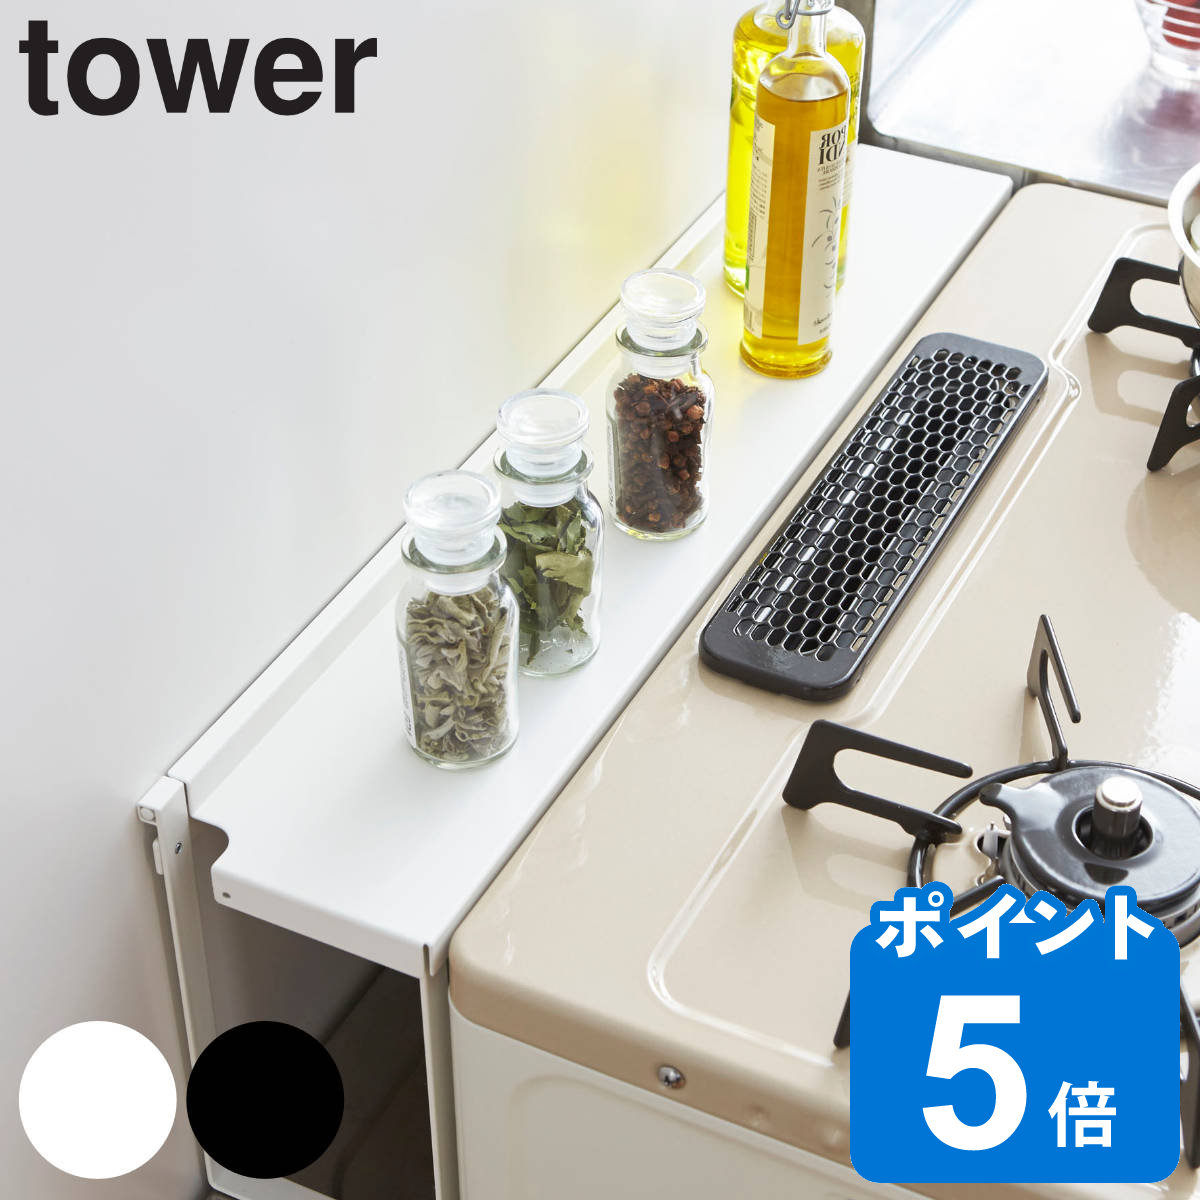 tower コンロ奥隙間ラック タワー